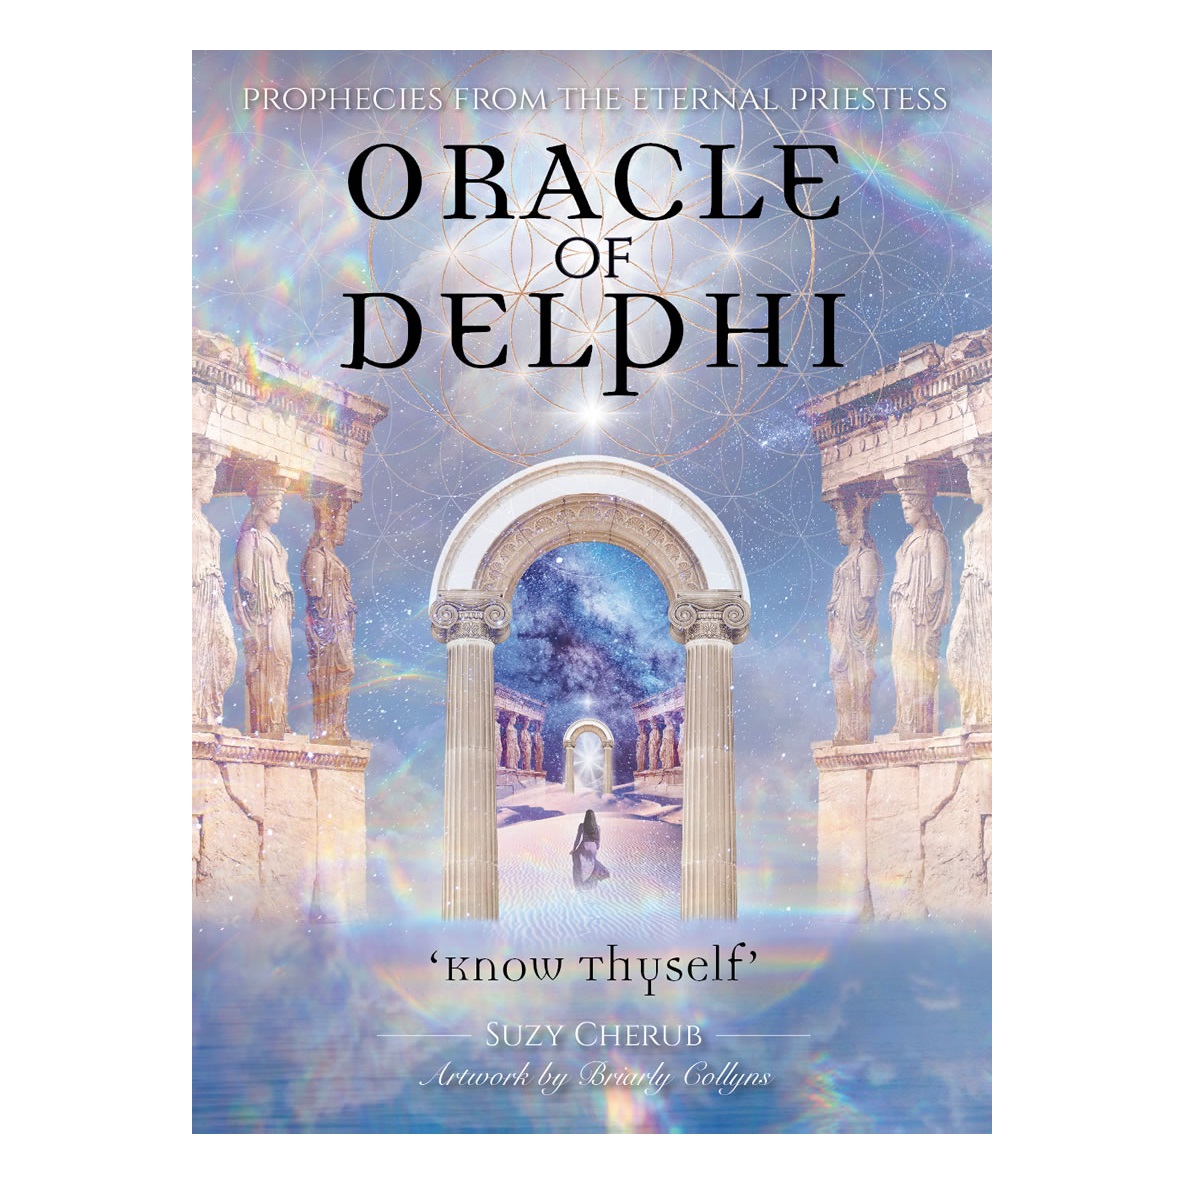 

Дельфийский Оракул (Oracle of Delphi)